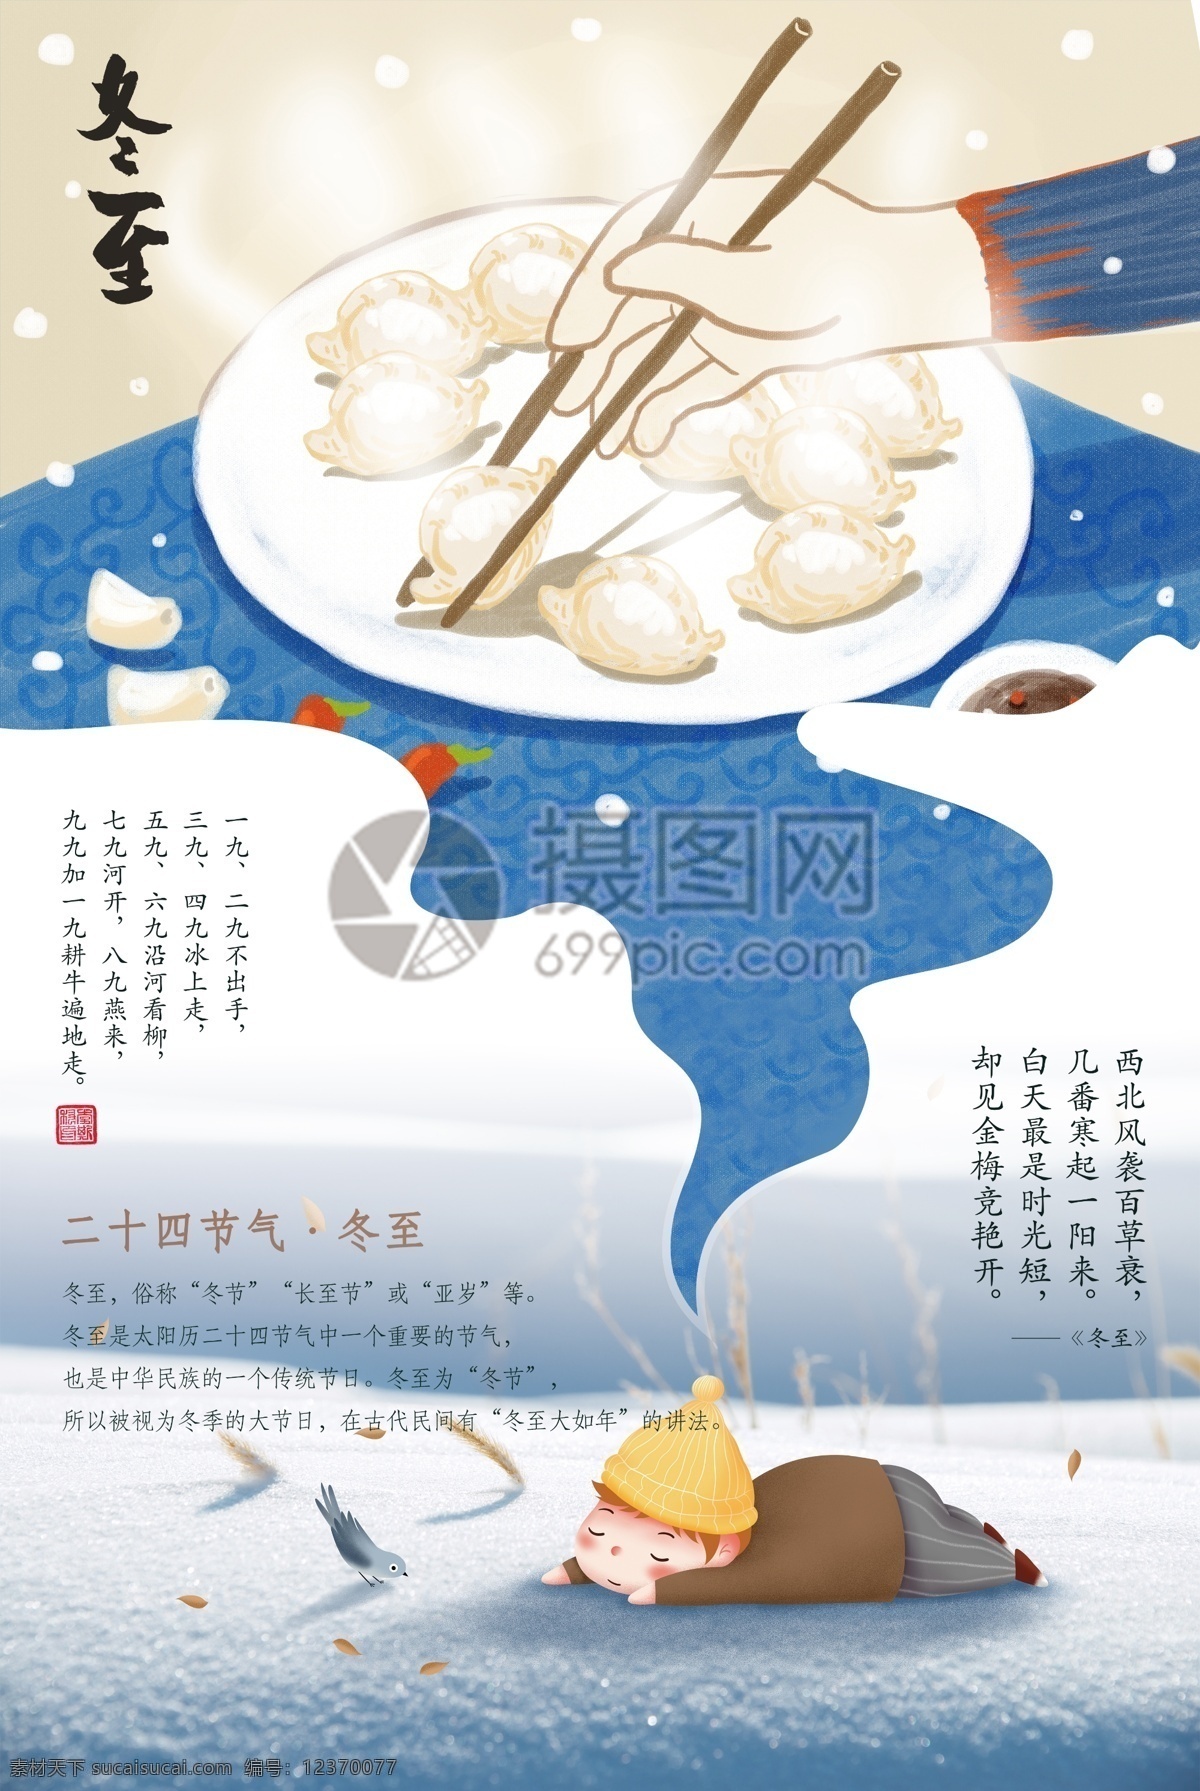 创意 二十四节气 冬至 吃 饺子 海报 冬至海报 冬天 雪地 梦中